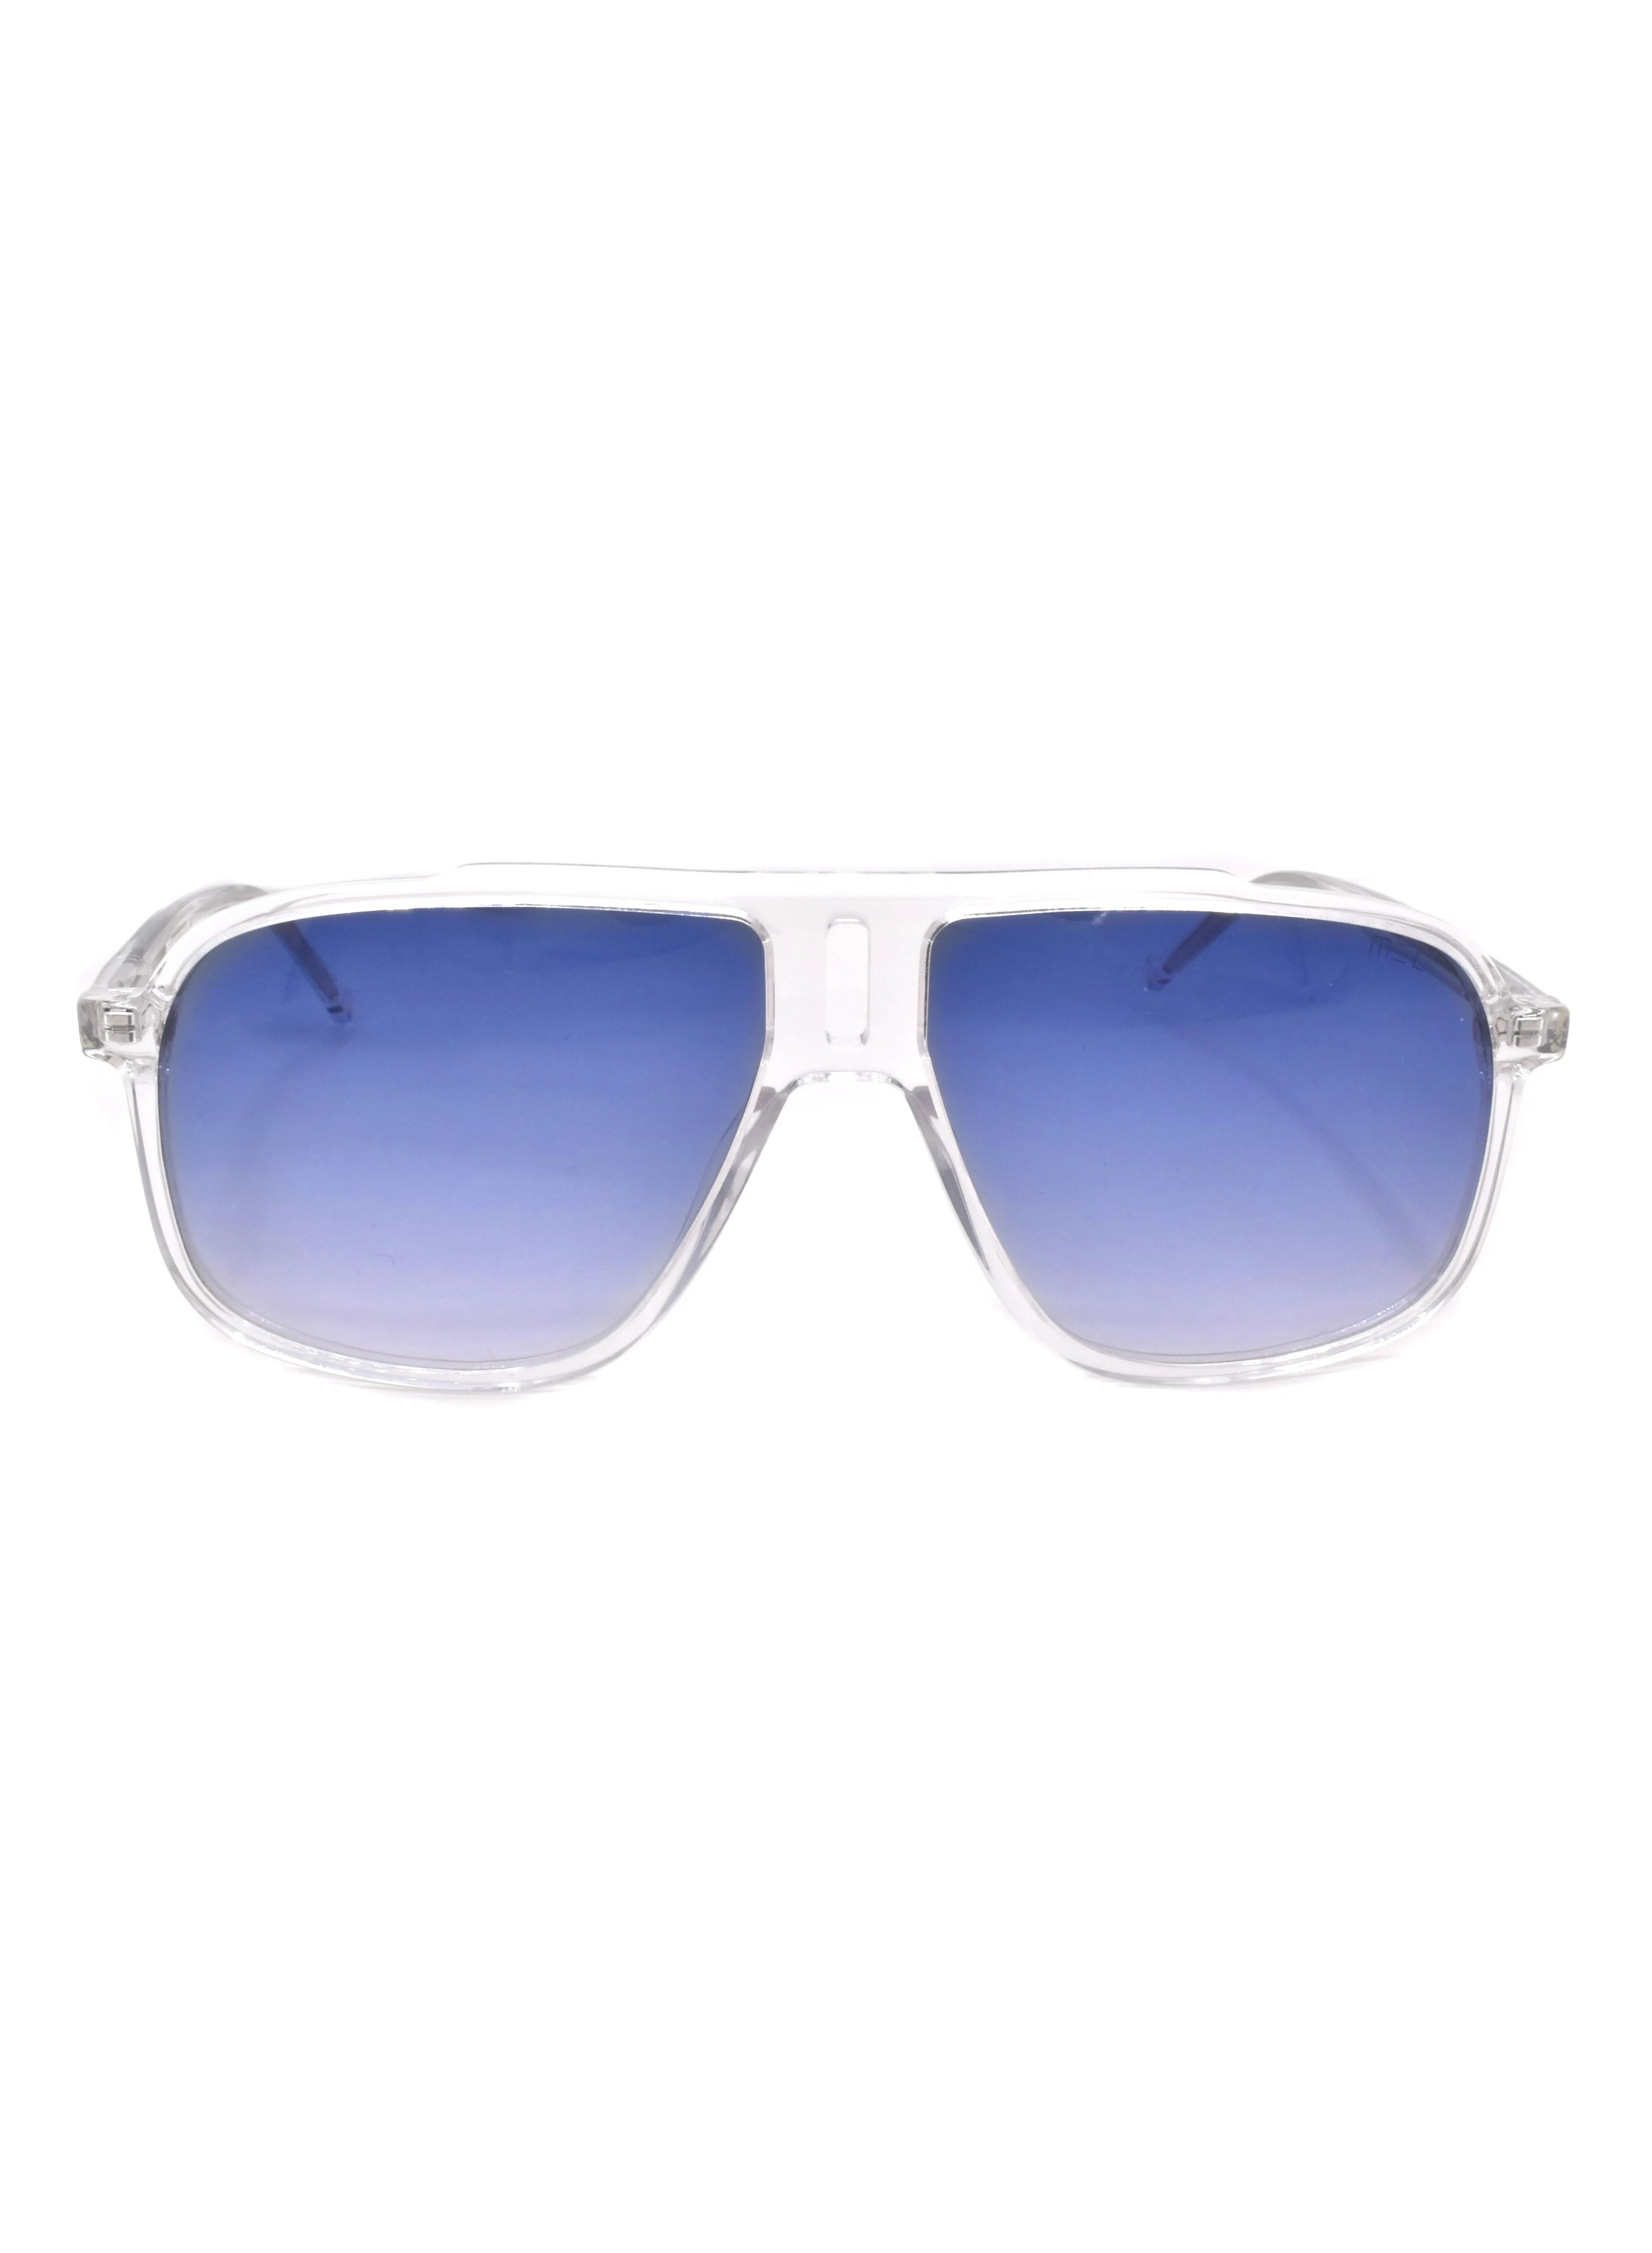 MEC Full Rim Square Sunglasses with Nose Pads 89935-C2